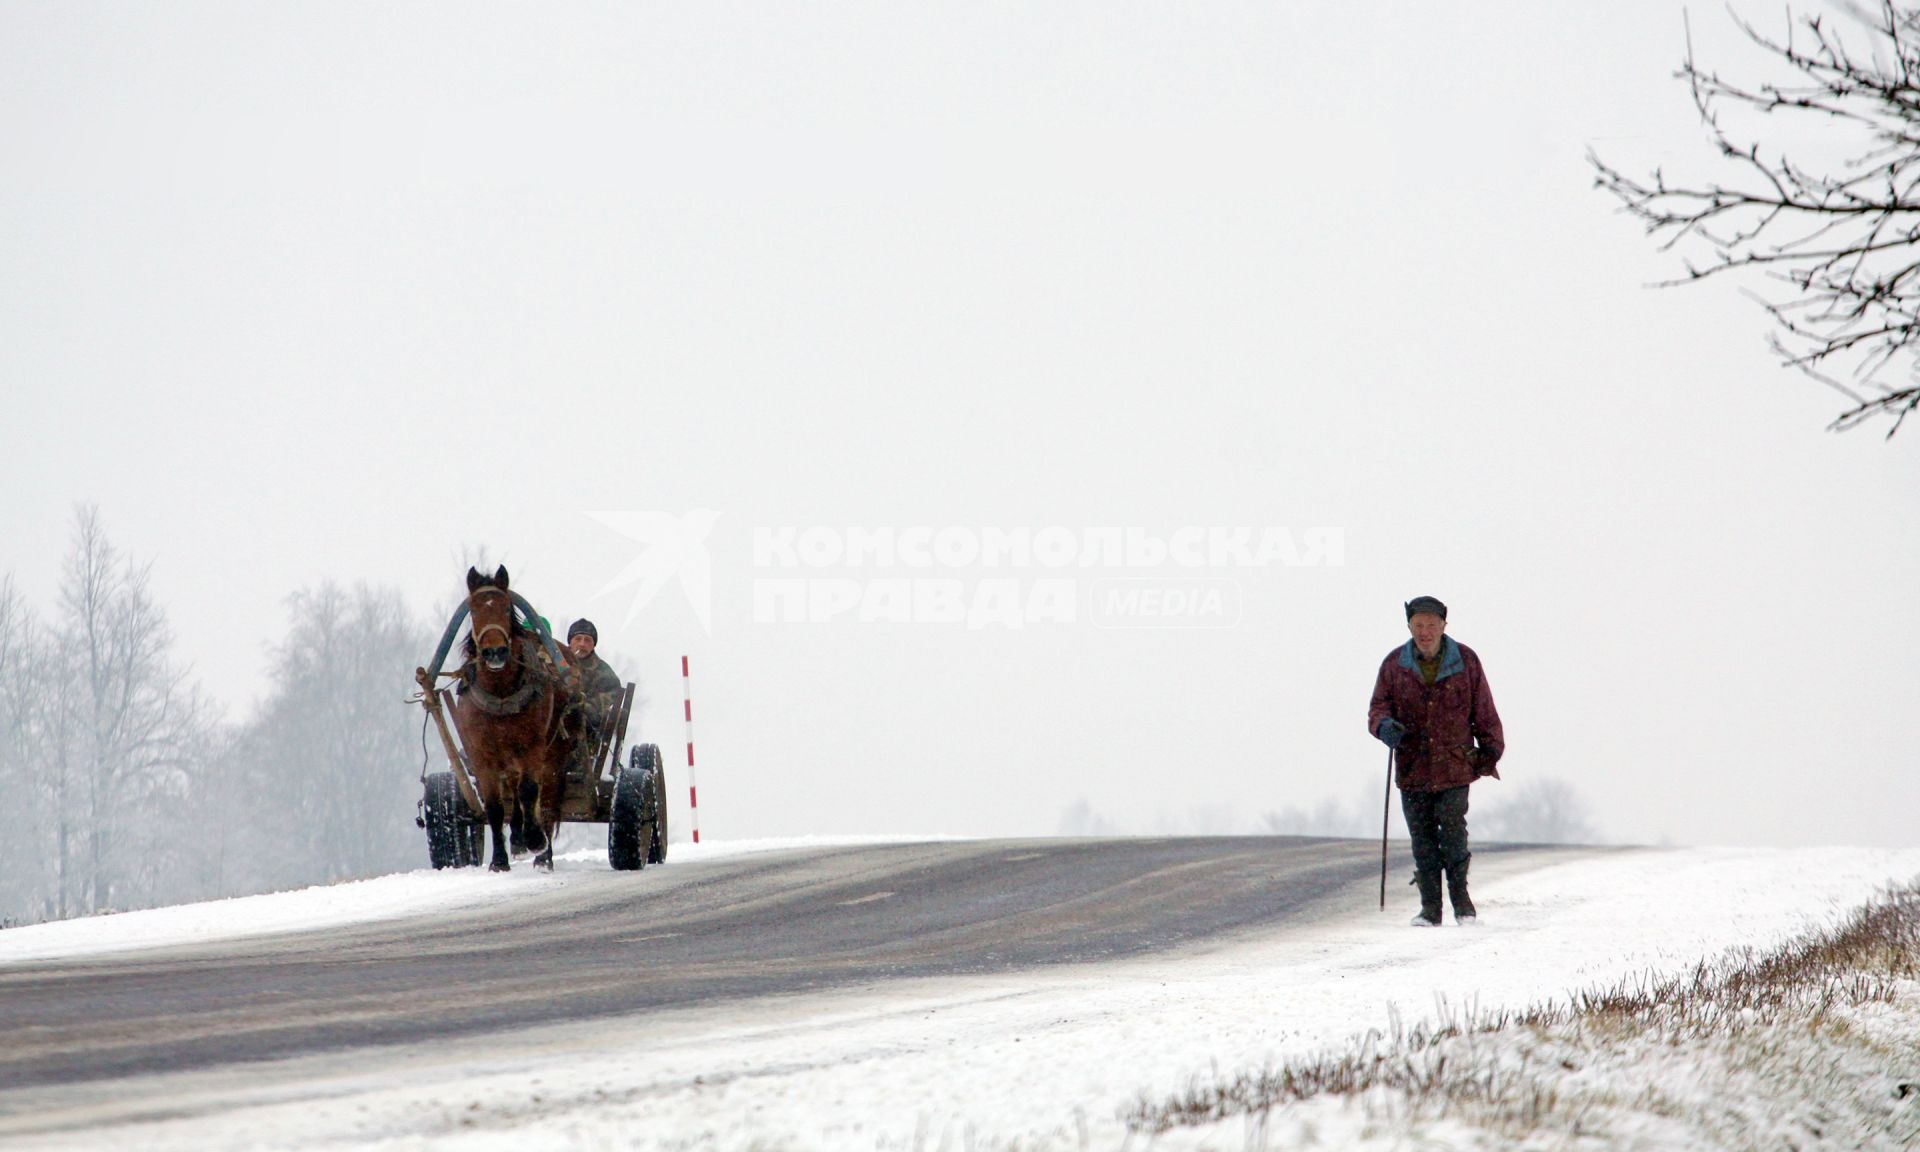 По дороге идет пожилой мужчина с палочкой и едет телега запряженная лошадью.